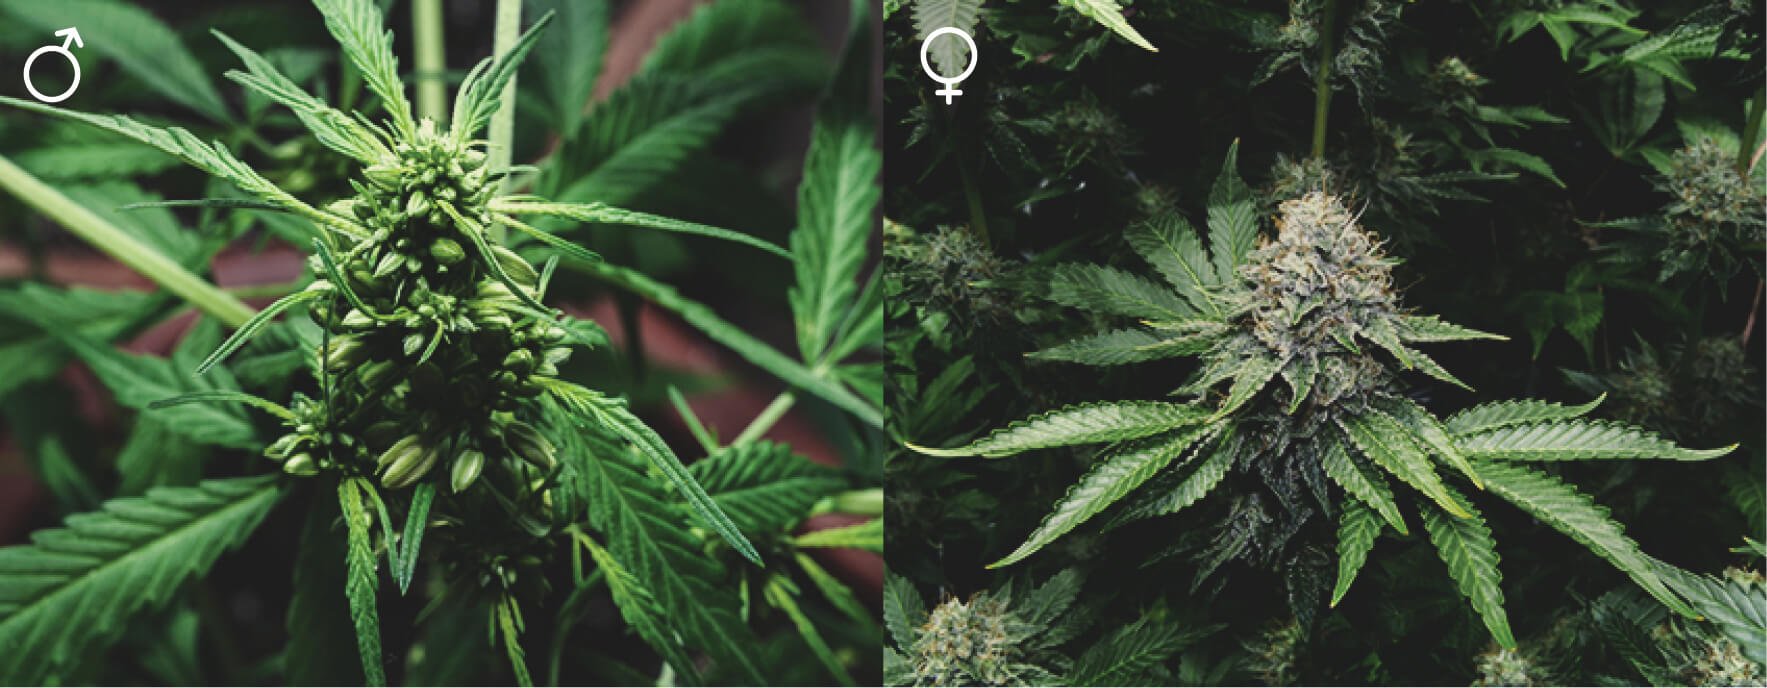 Sind alle Cannabispflanzen gleich?